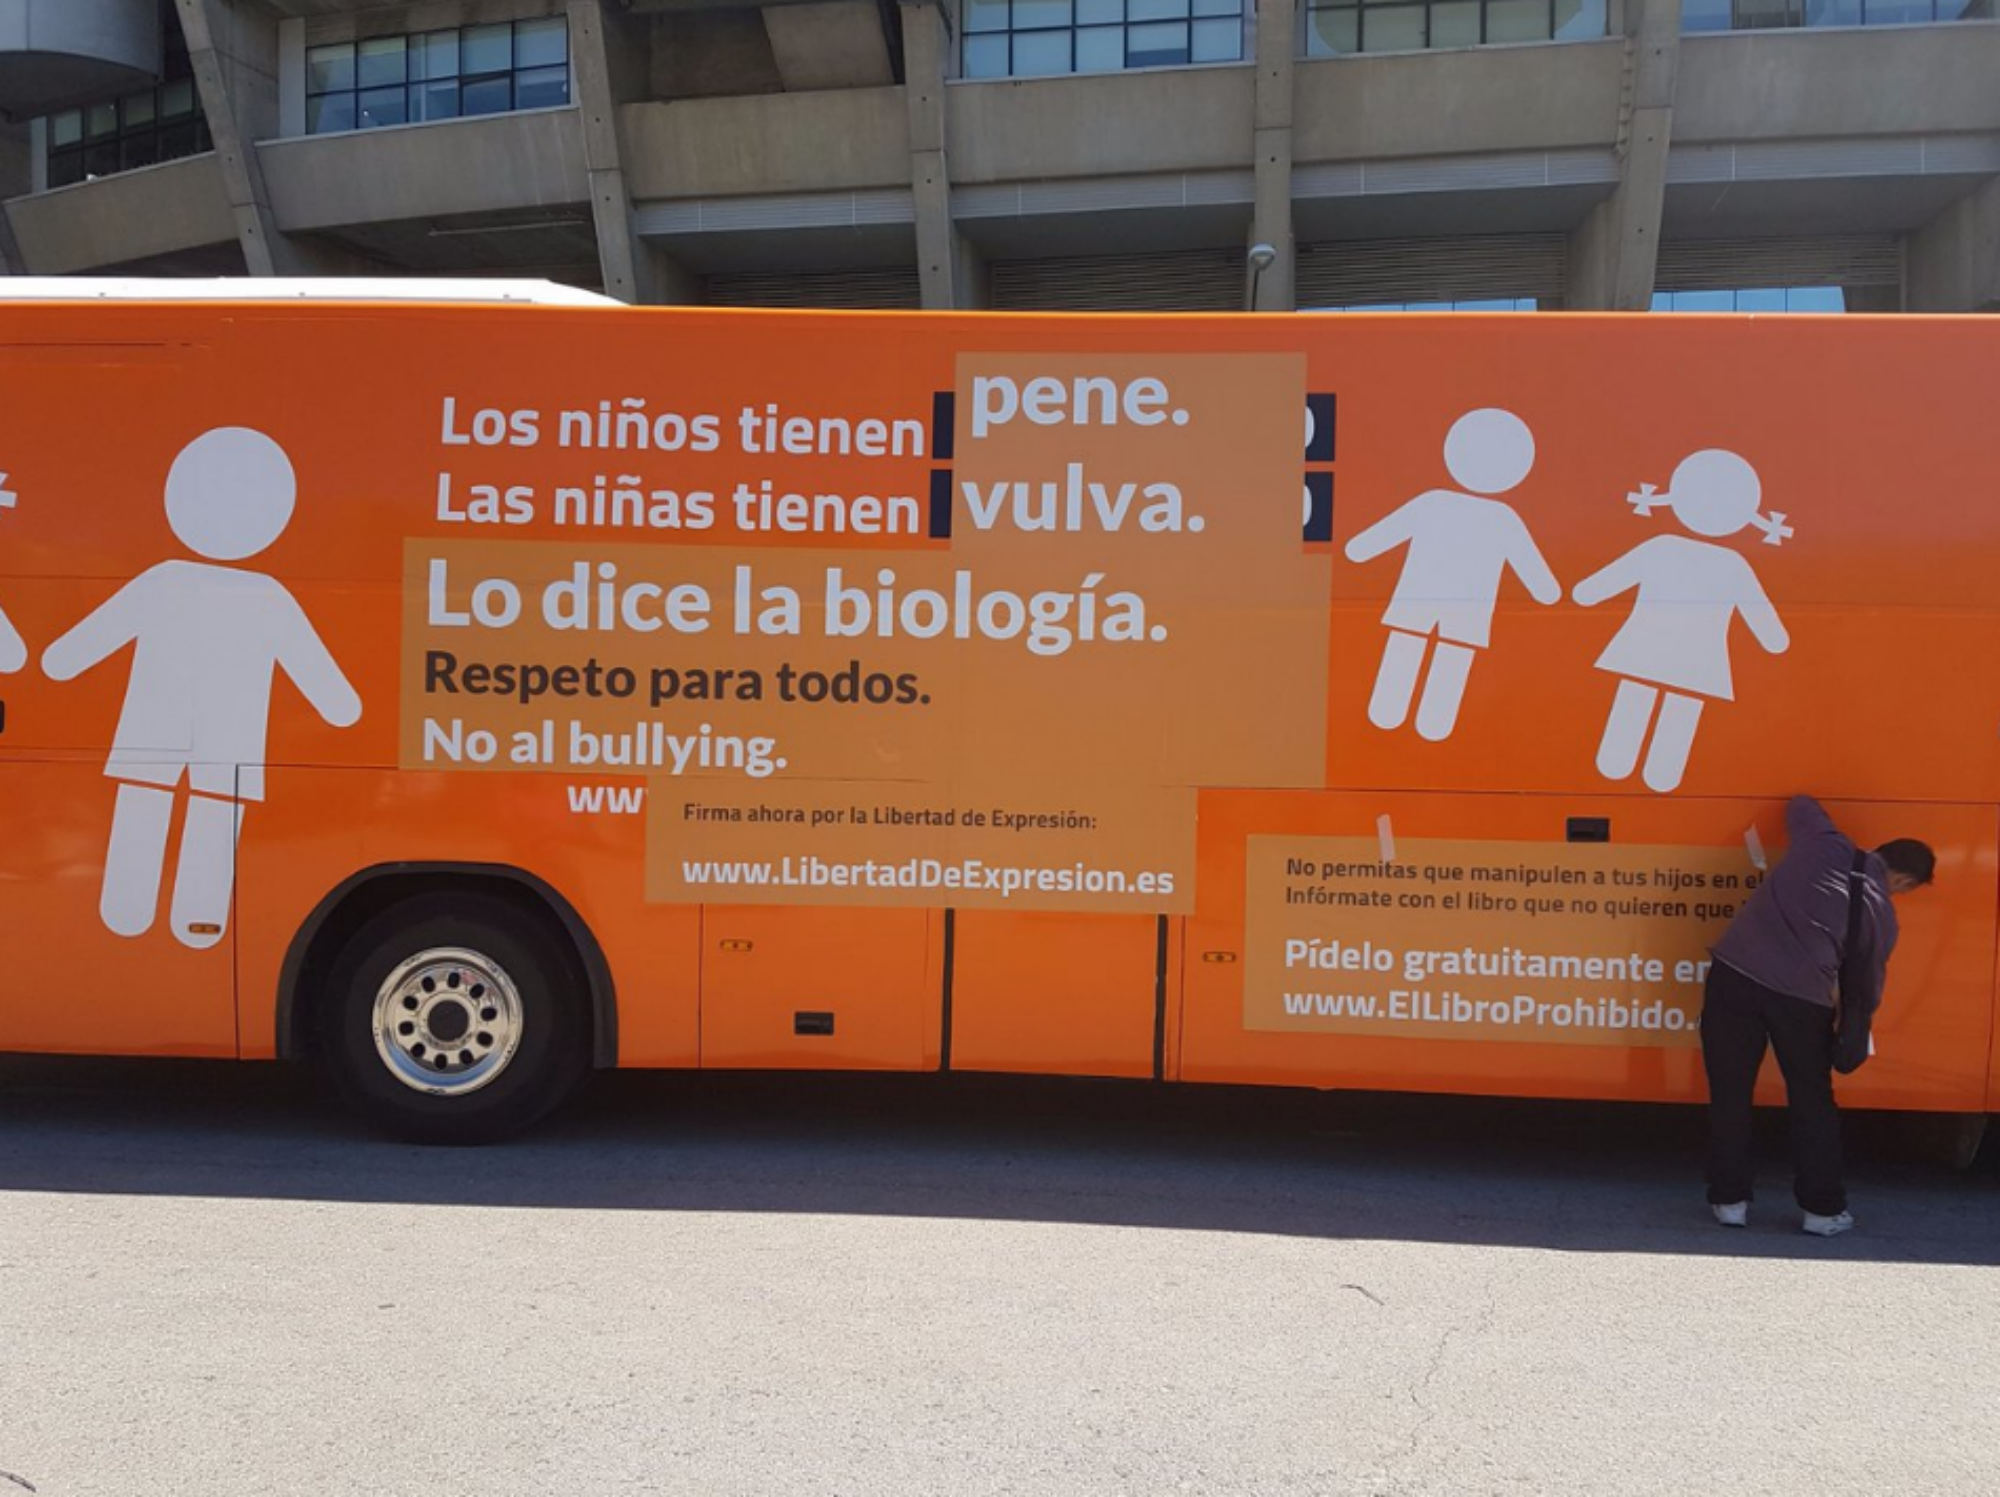 L'Ajuntament de Barcelona estudia aturar penalment el bus d'Hazte Oír